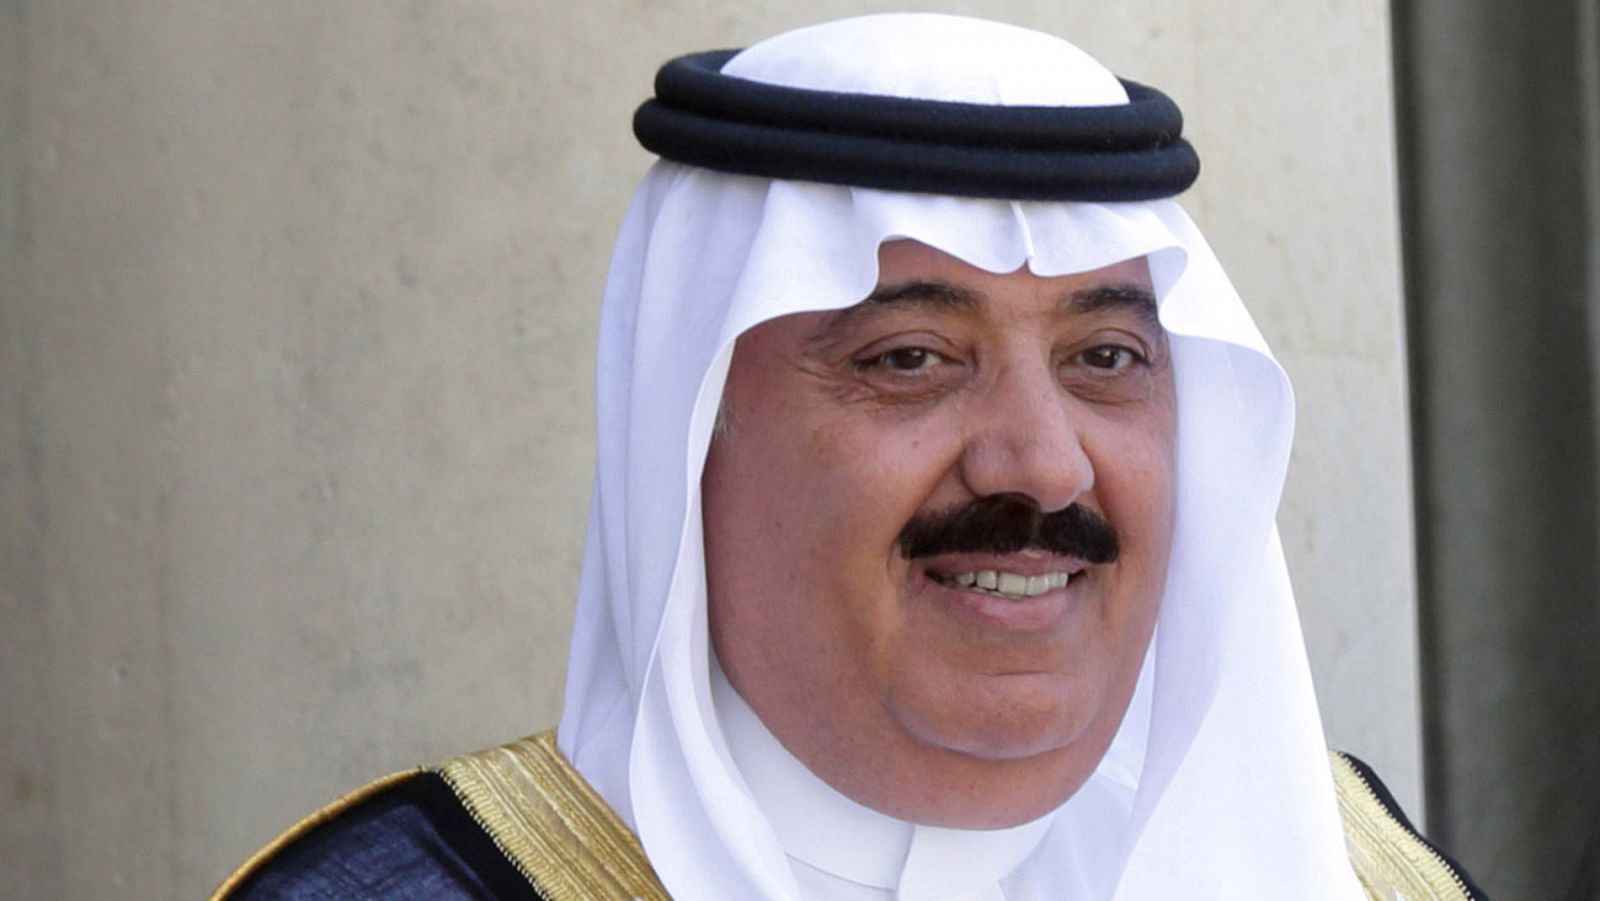 Arabia Saudí libera a uno de los príncipes acusado de corrupción tras pagar 800 millones de euros